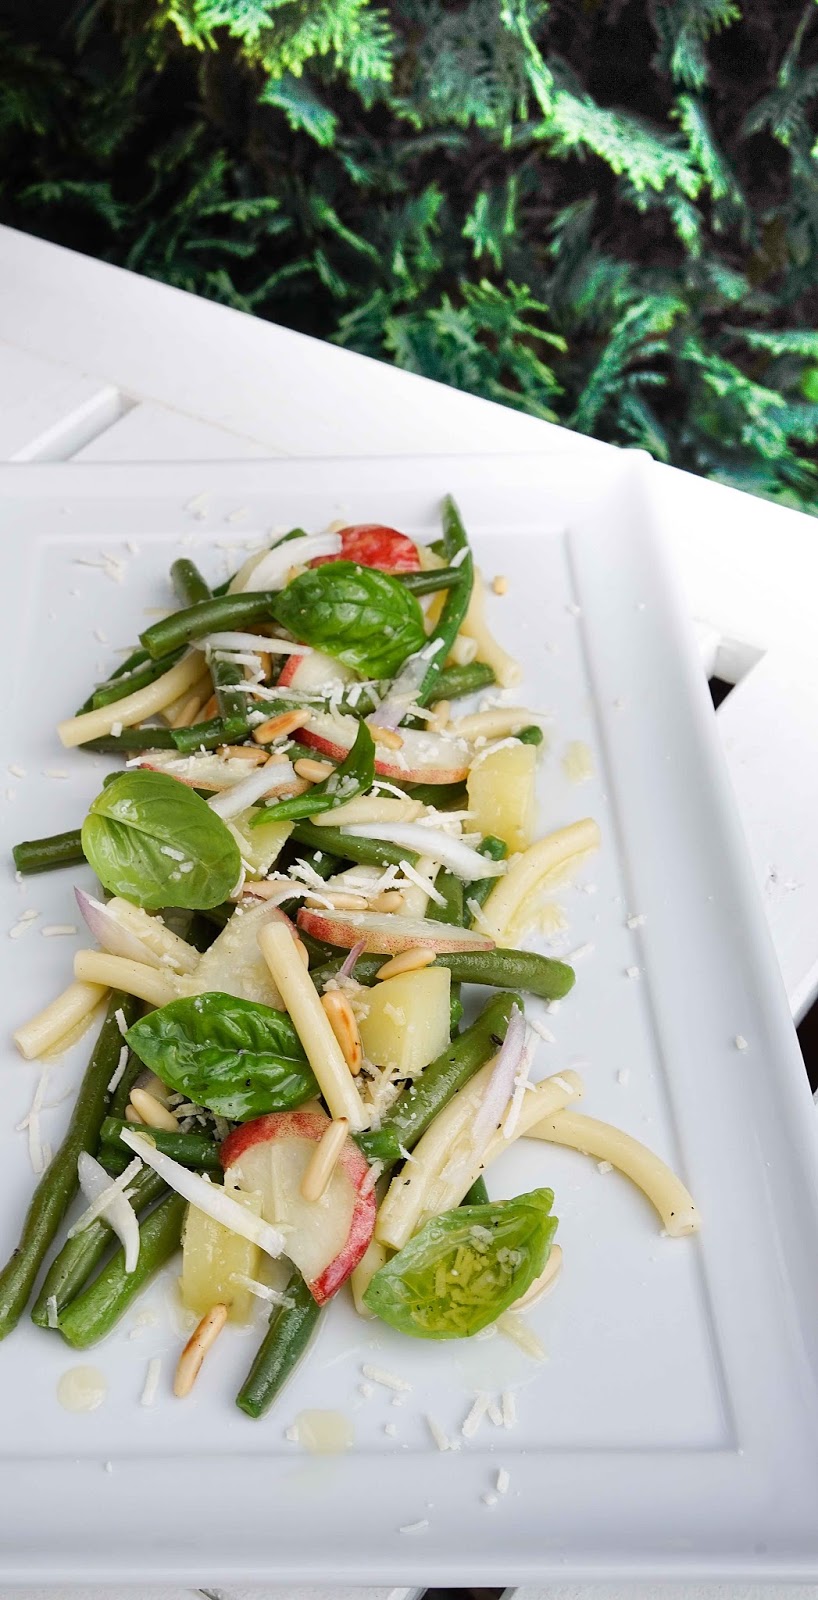 stuttgartcooking: Grüne-Bohnen-Pfirsich-Salat mit Kartoffeln und Nudeln